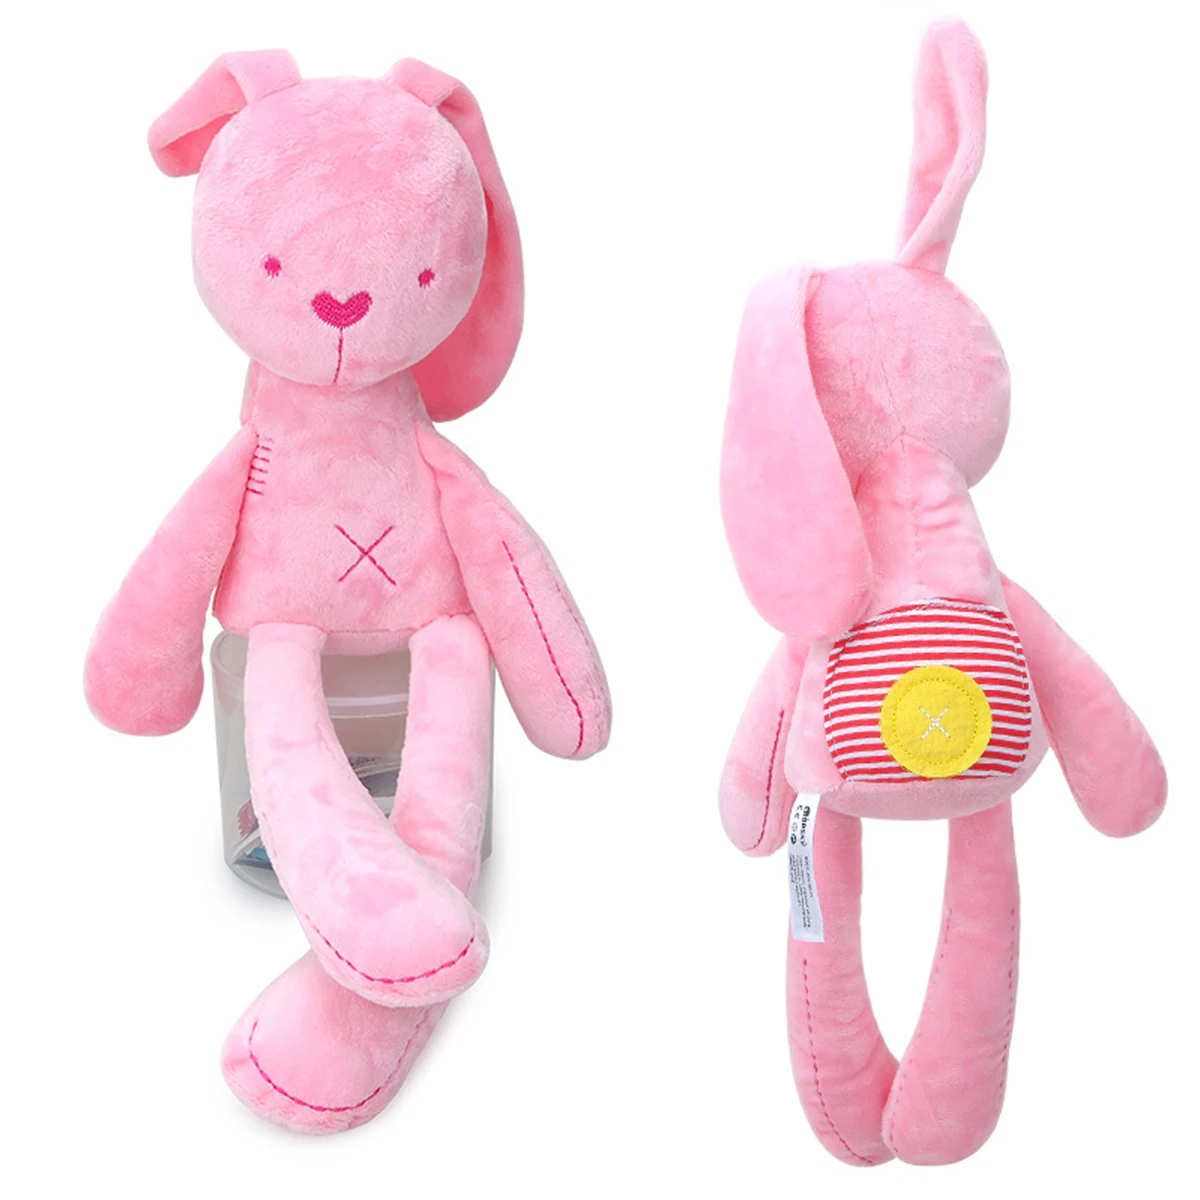 Розовый/белый детский кролик спящий Комфорт Кукла Плюшевые игрушки Гладкий послушный кролик спать спокойно кукла